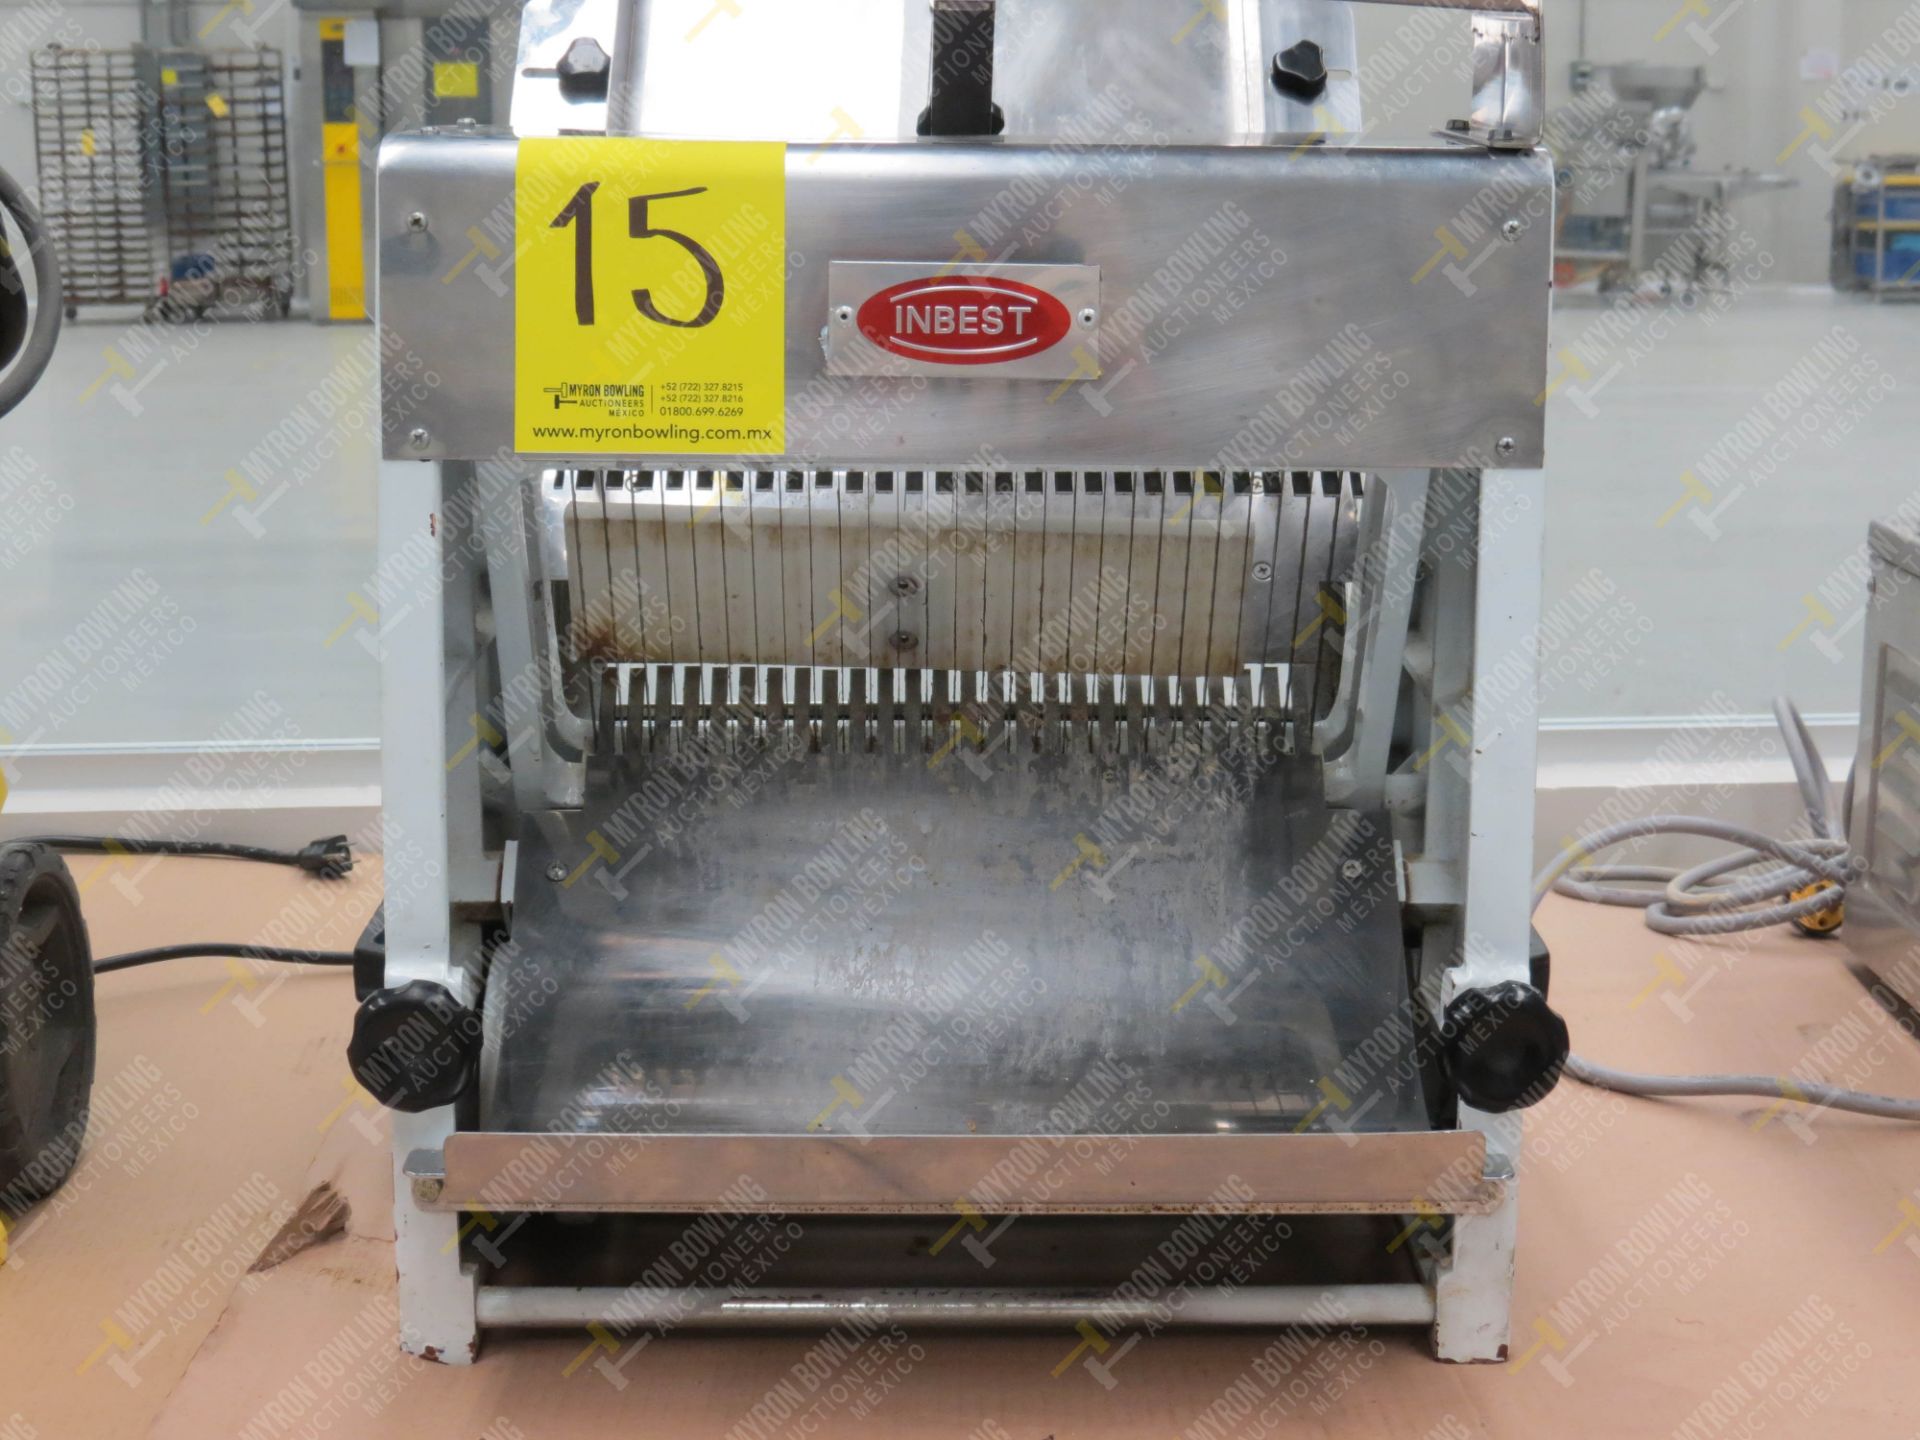 Rebanadora de pan de caja marca Inbest, Modelo 85081512, No. de Serie 639387, año 2006